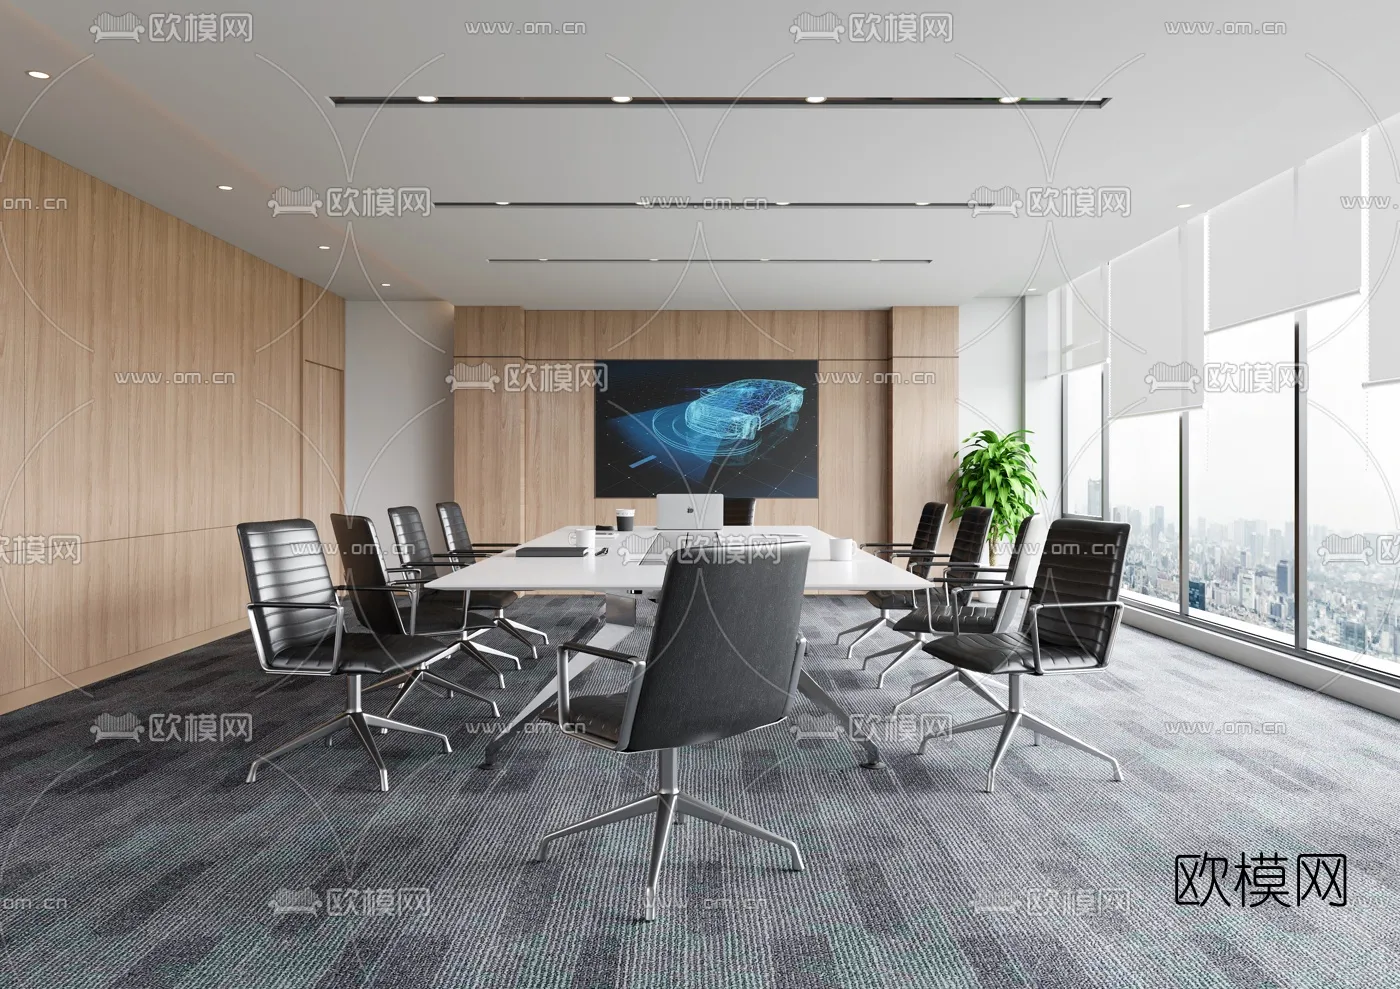 Meeting Room 3D Scenes – 1442